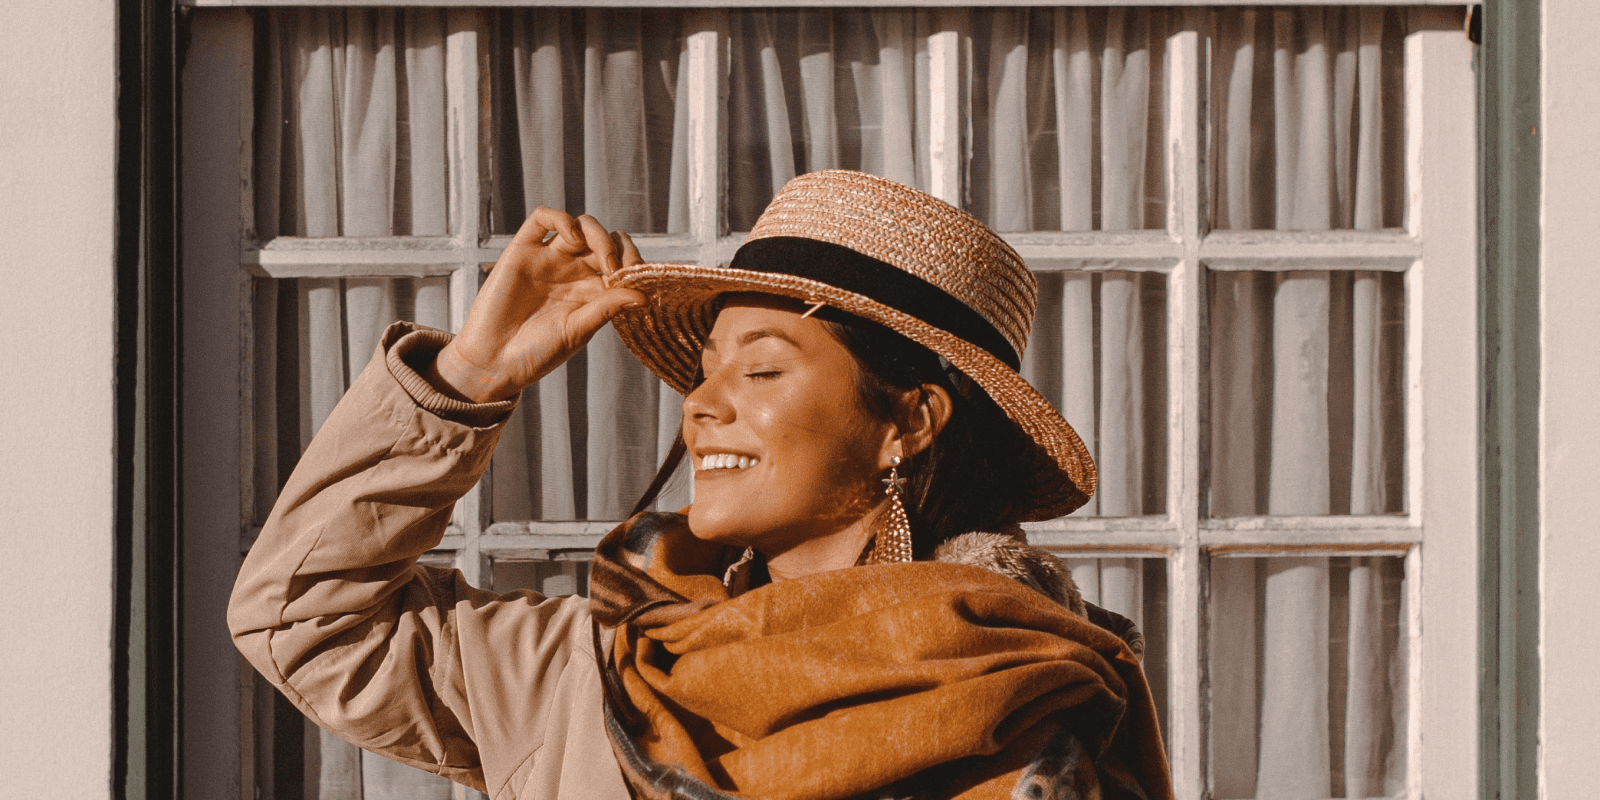 Mujer sonriente con sombrero toma el sol frente a una ventana.